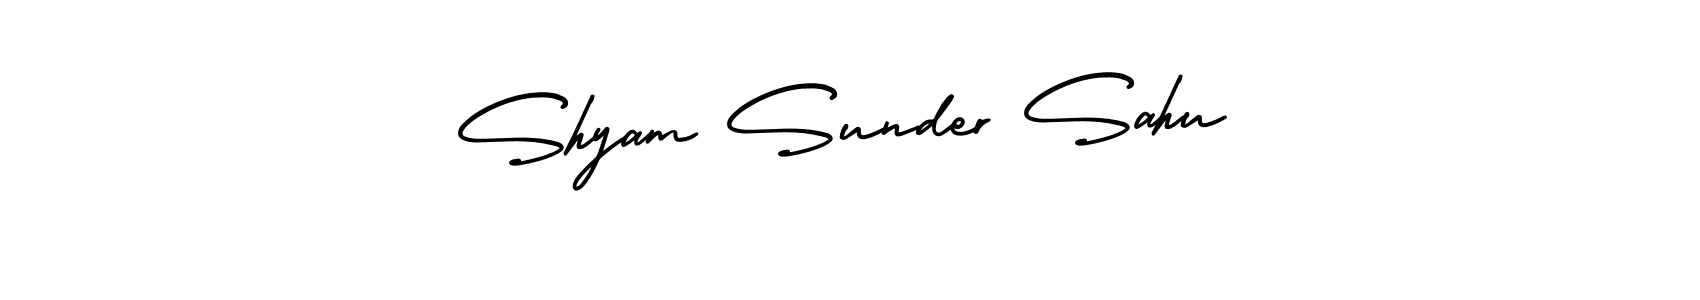 88+ Shyam Sunder Sahu Name Signature Style Ideas | Professional ...